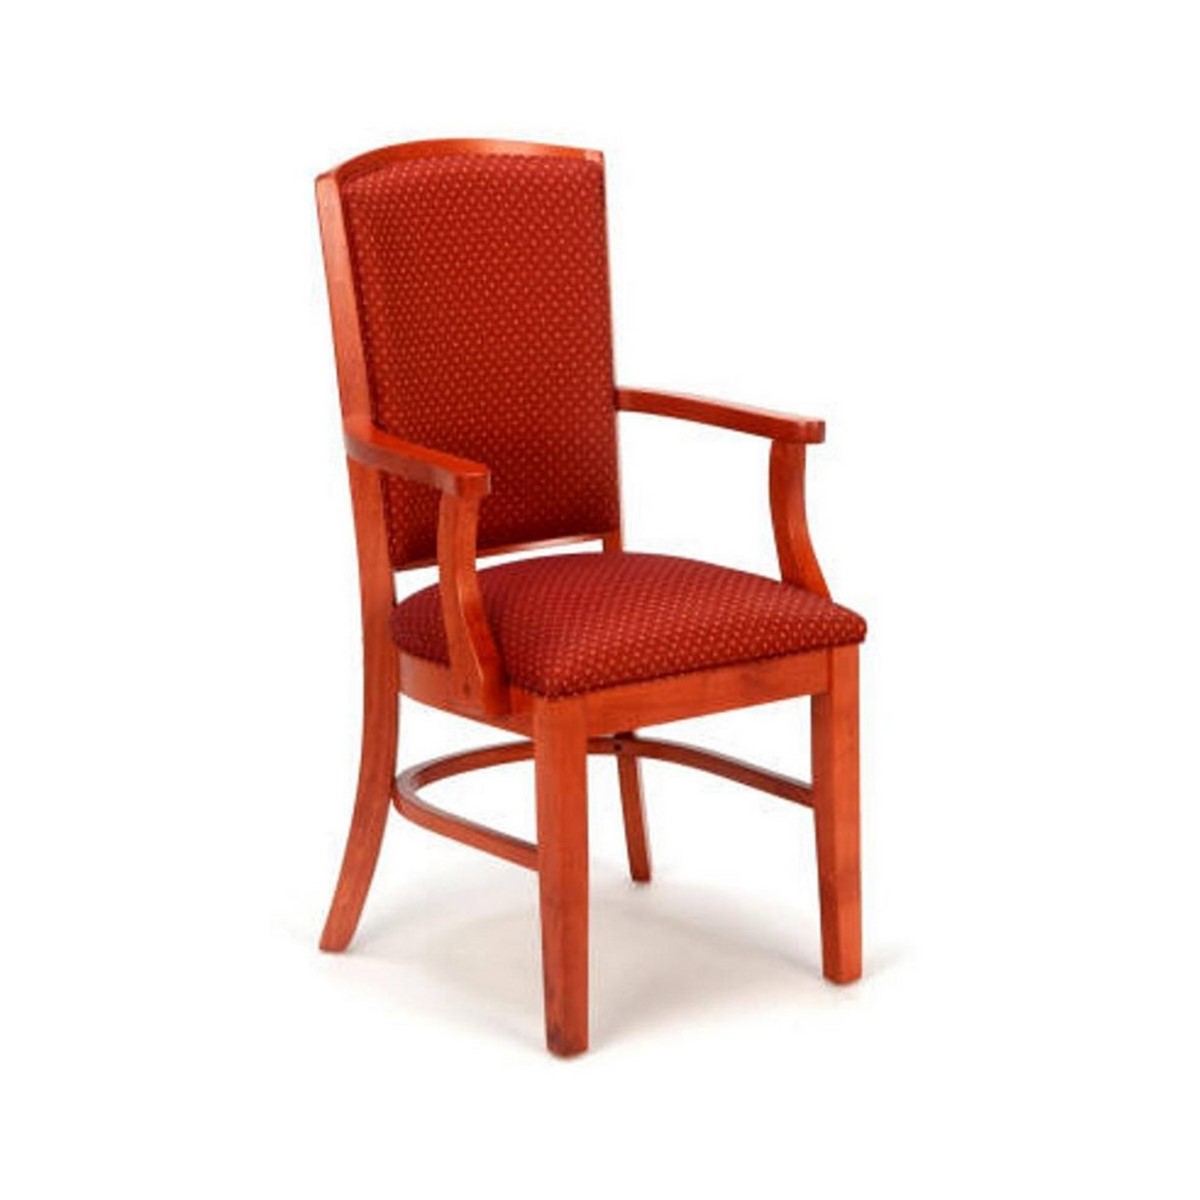 Arm Chair Model 3067A